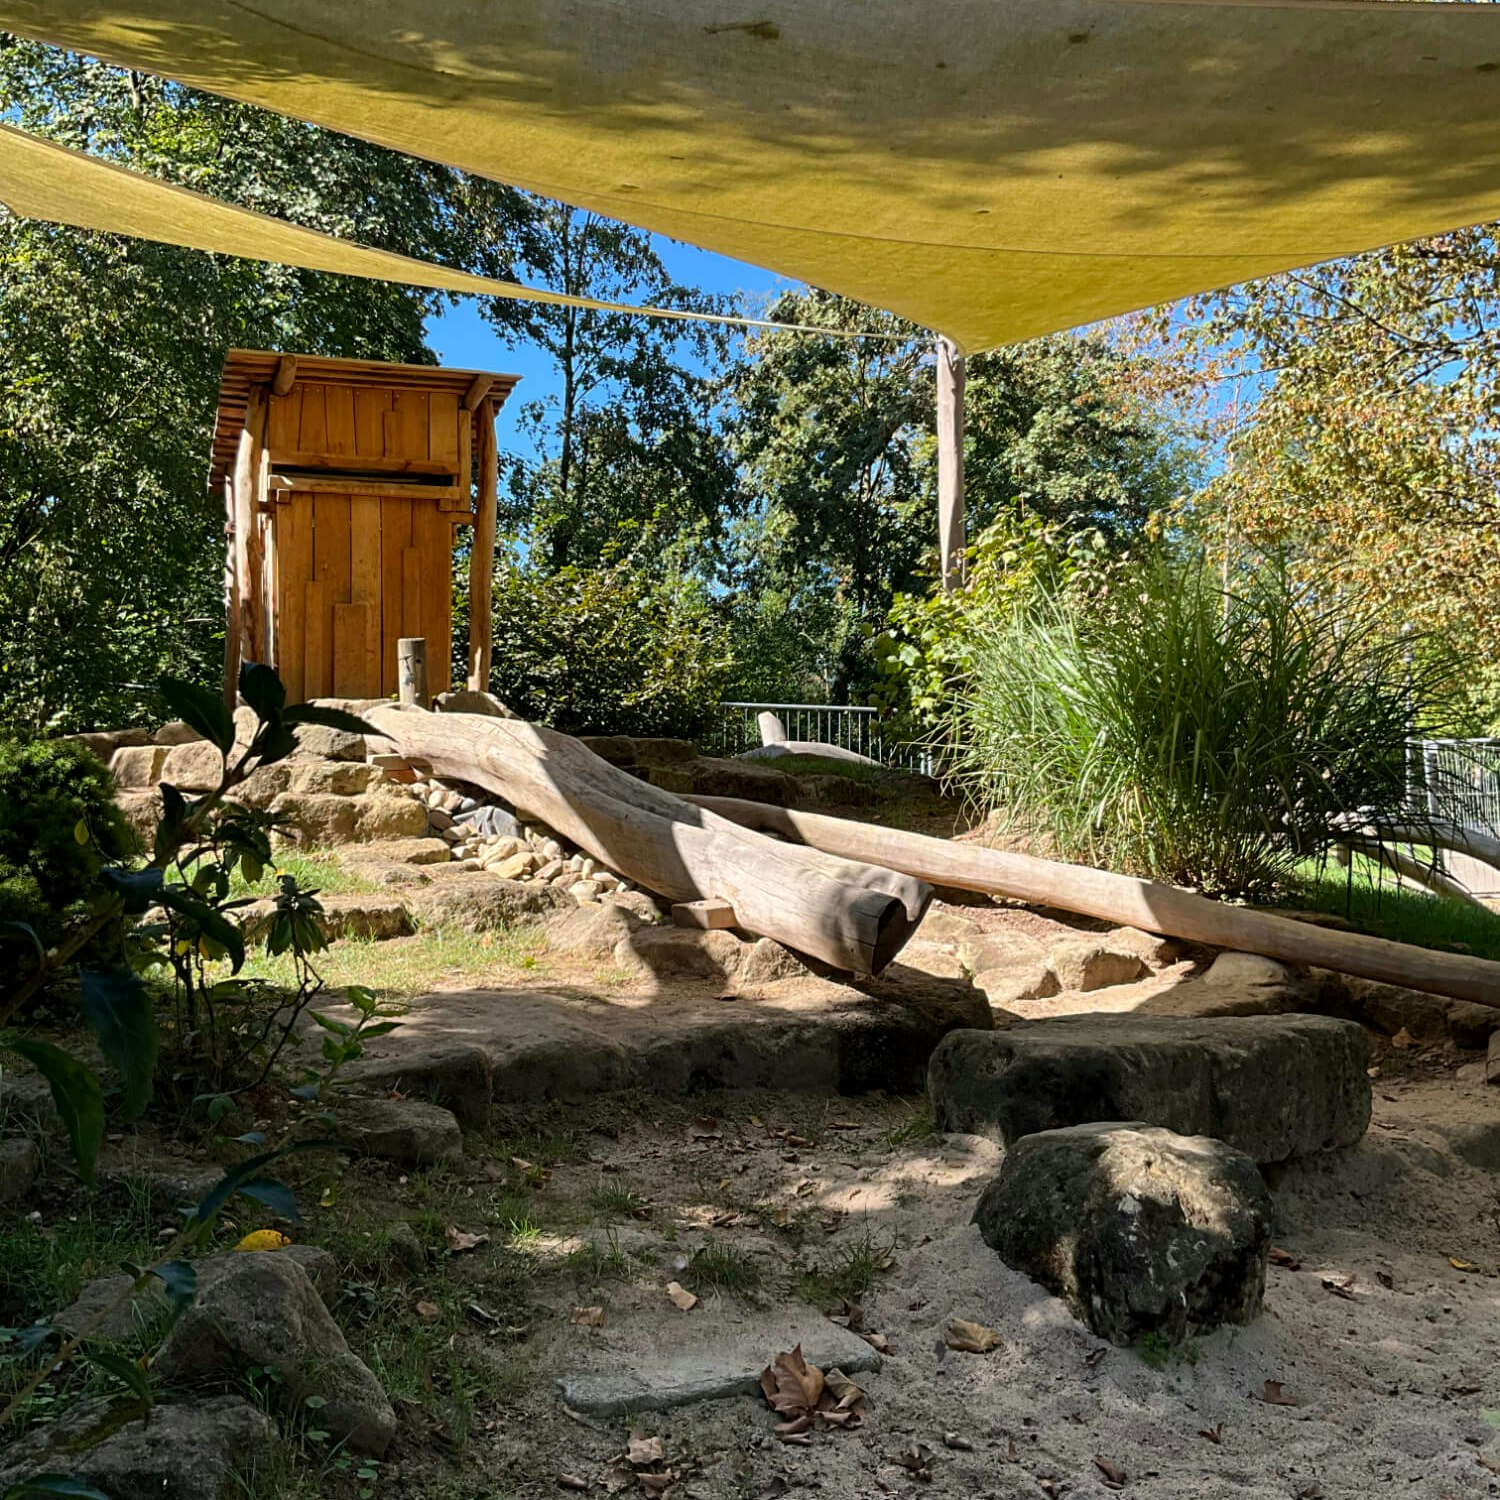 Eine Holzhütte hinter einem Sandkasten mit einem Sonnensegel darüber.